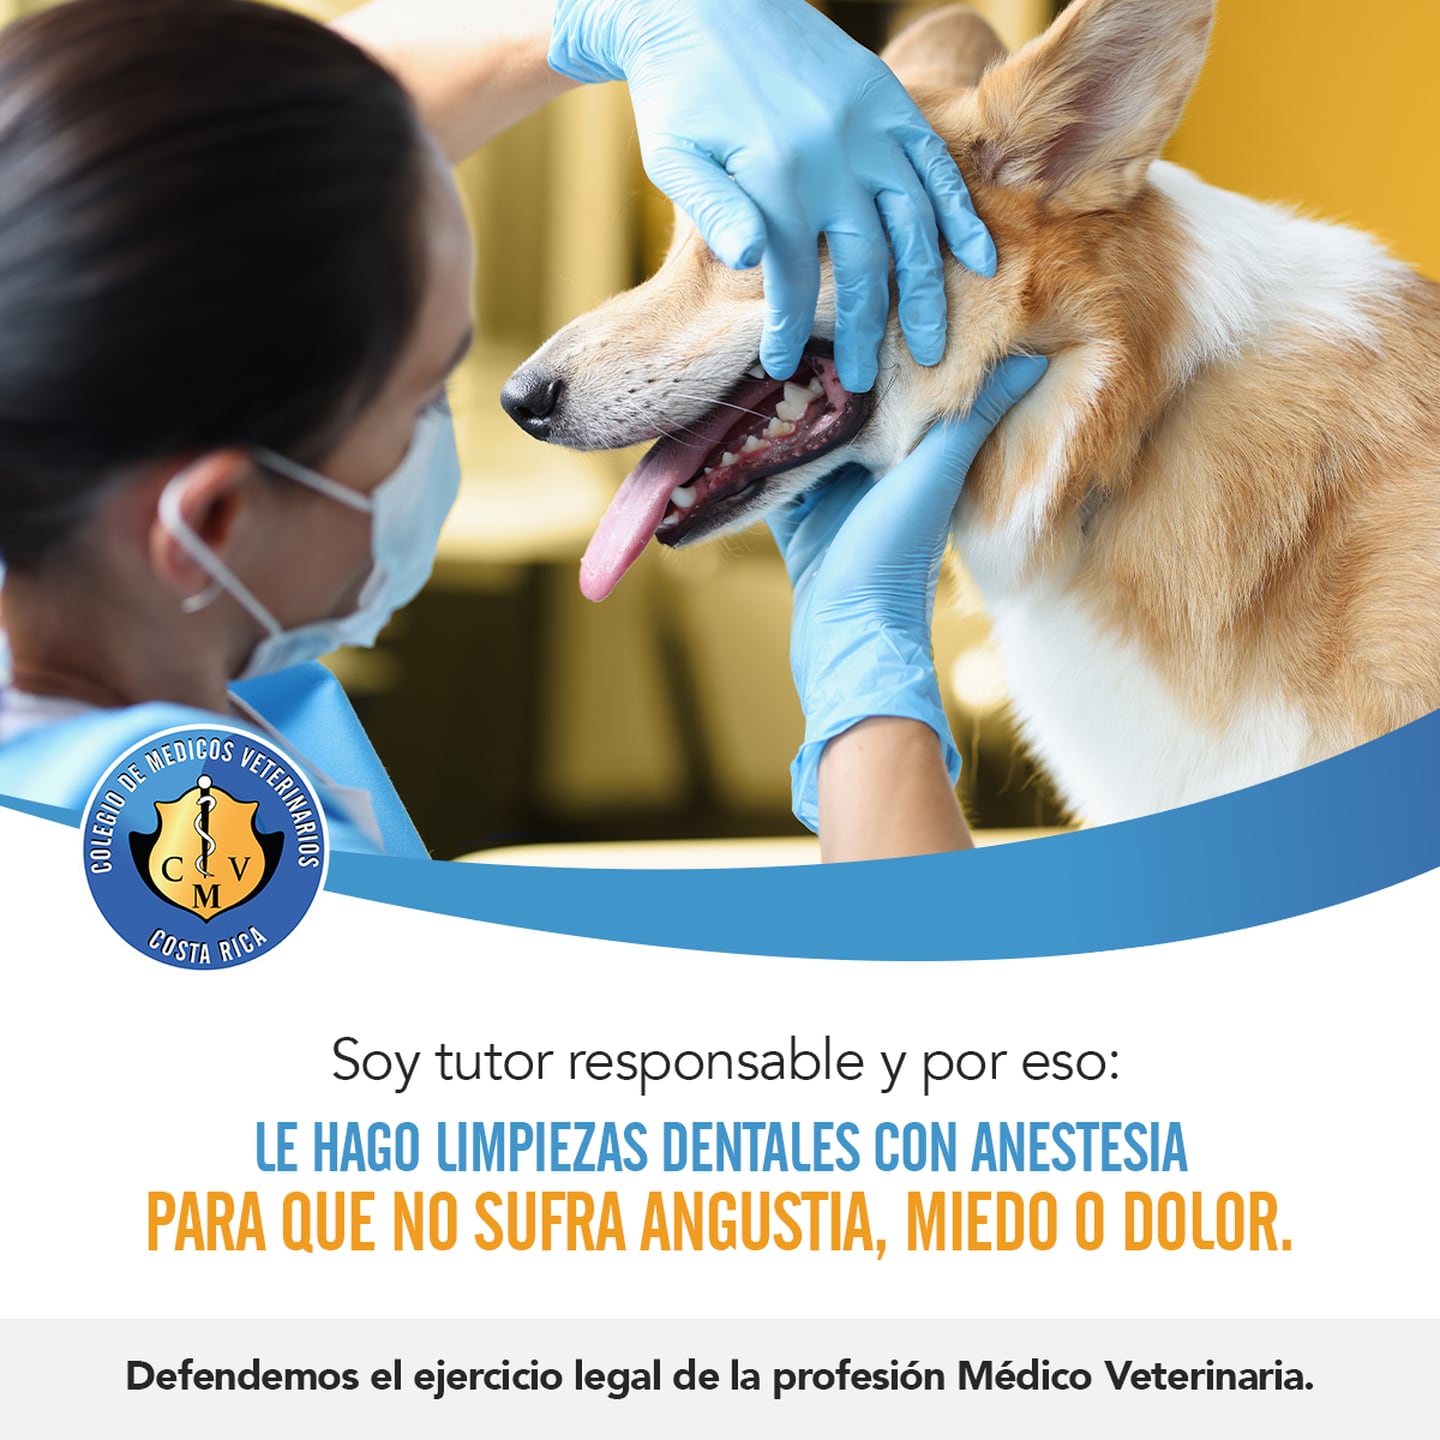 Las limpiezas dentales sin anestesia a perros han provocado que el Colegio de Veterinarios encienda todas sus alertas porque provocan extrema angustia, miedo, dolor y ponen en peligro hasta la vida de los peluditos.